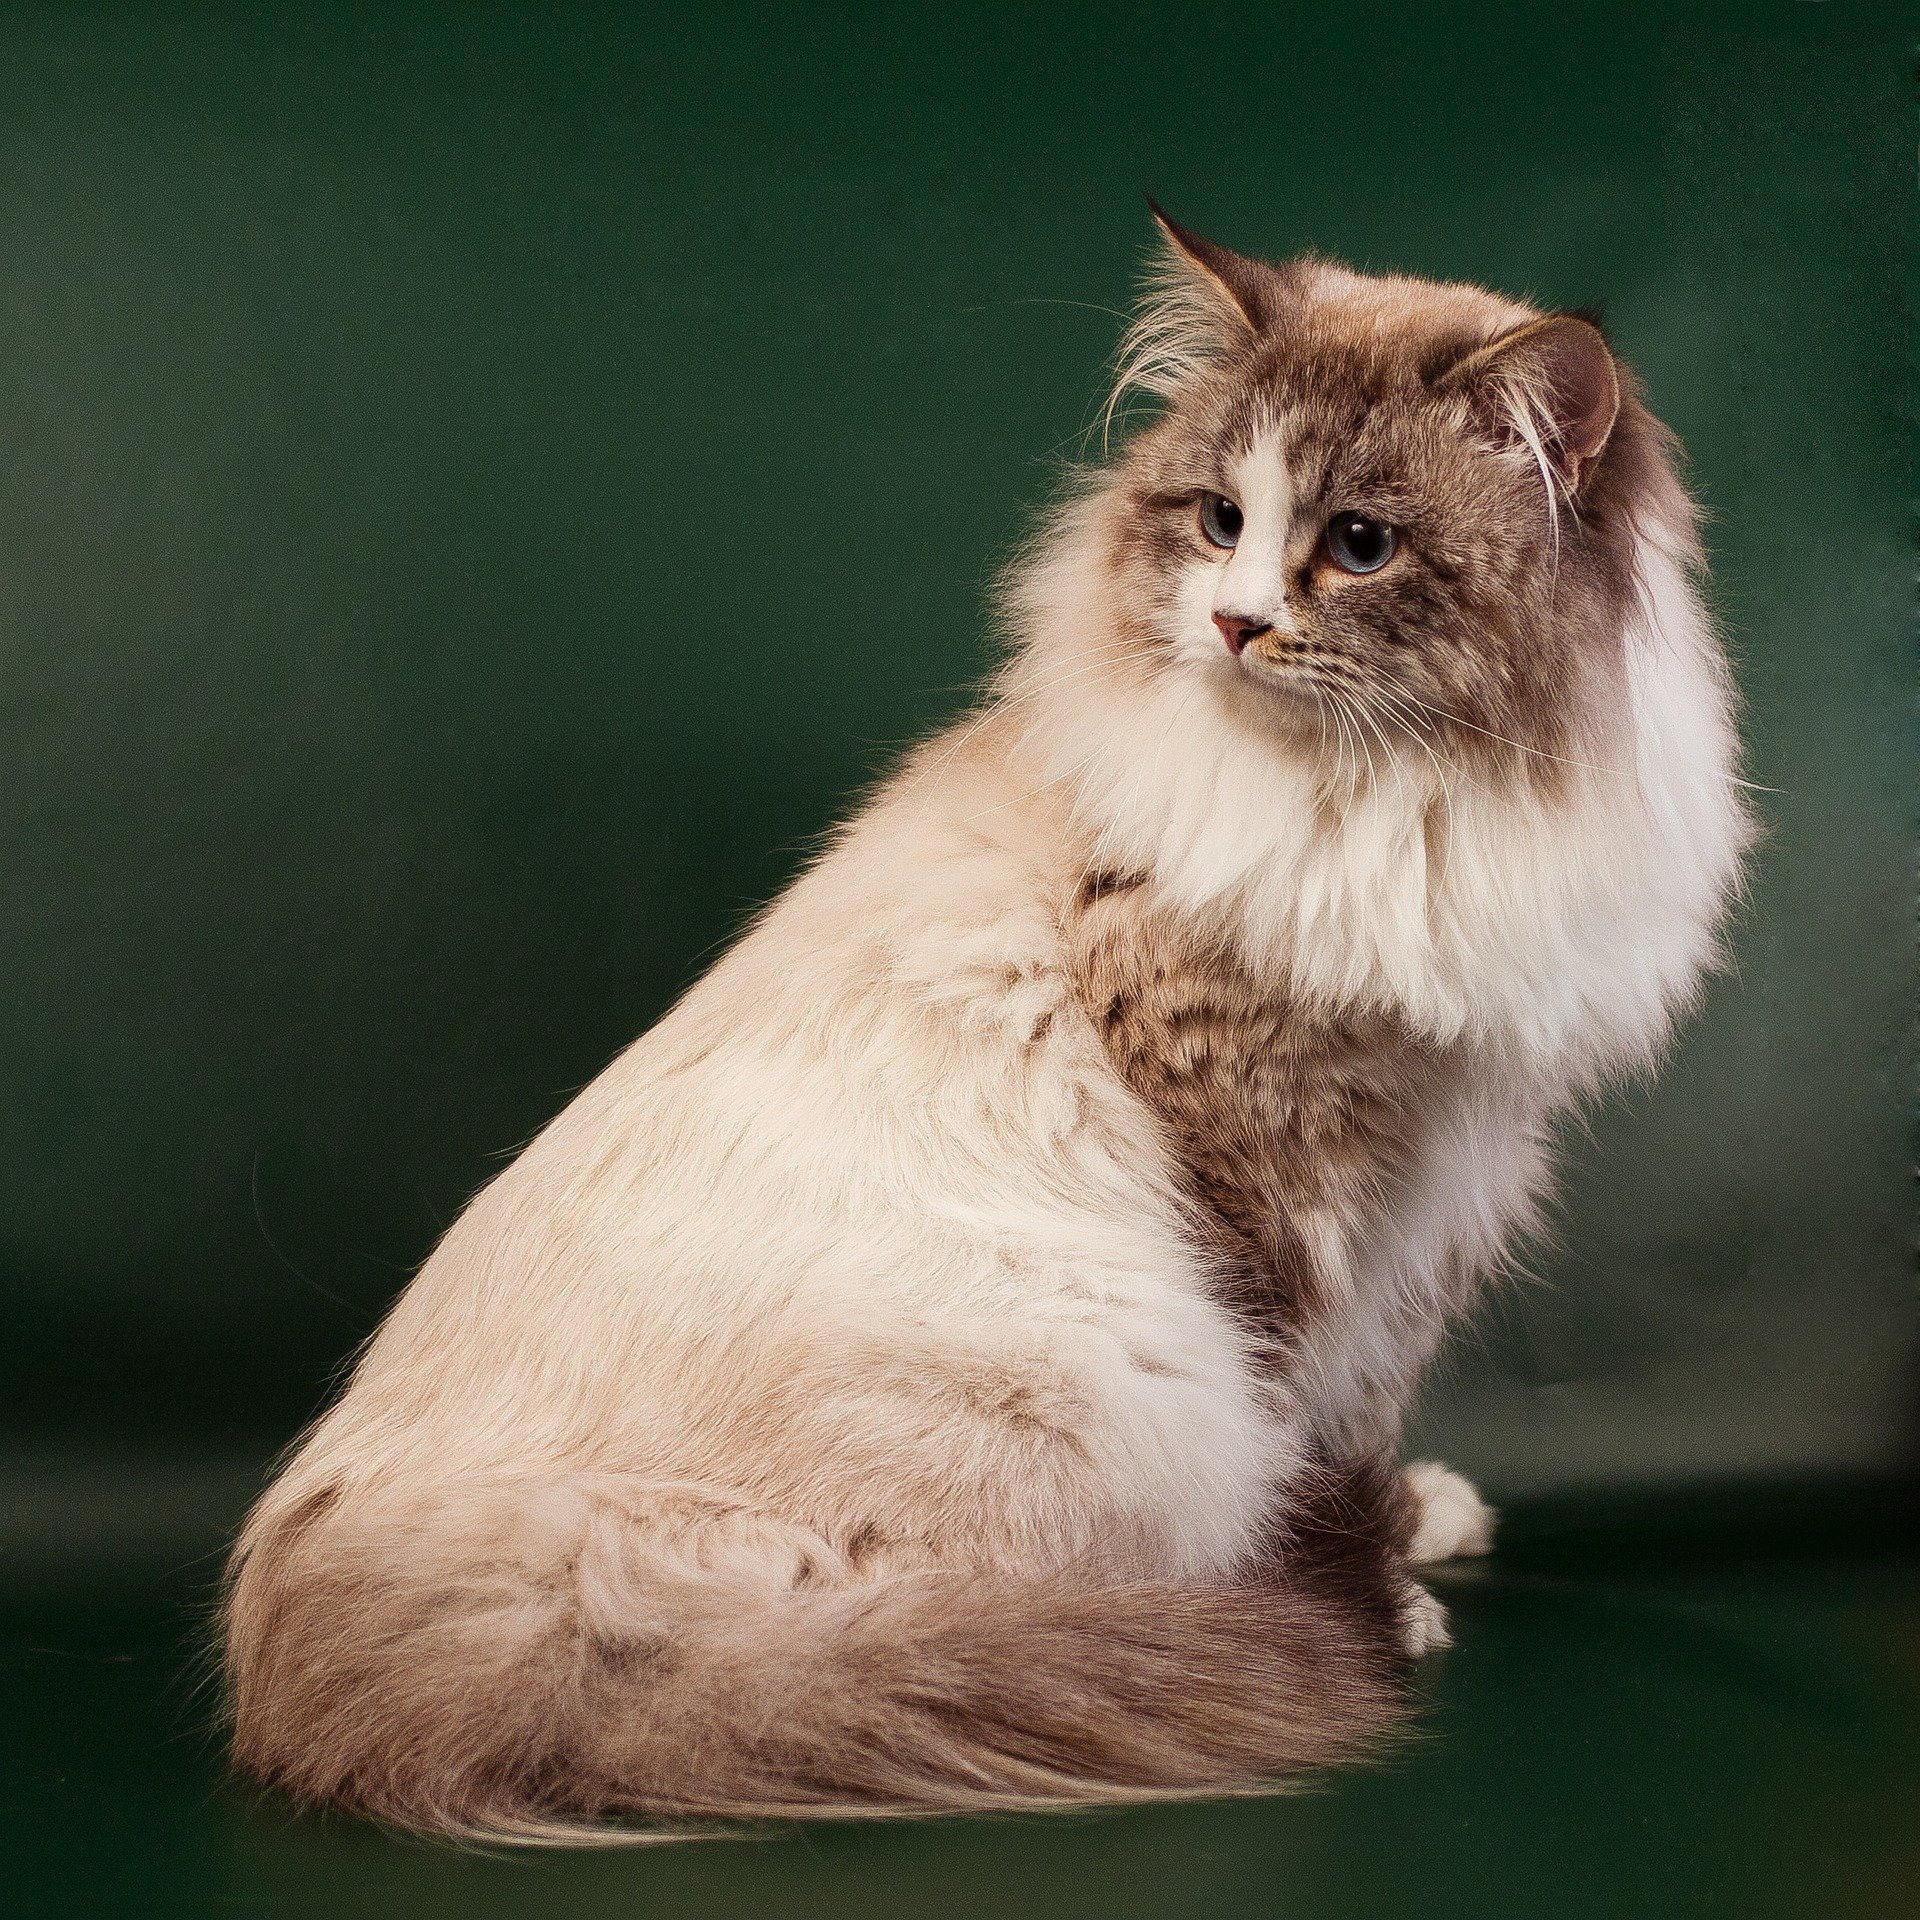 Neva masquarade jest odmianą barwną kotów syberyjskich.